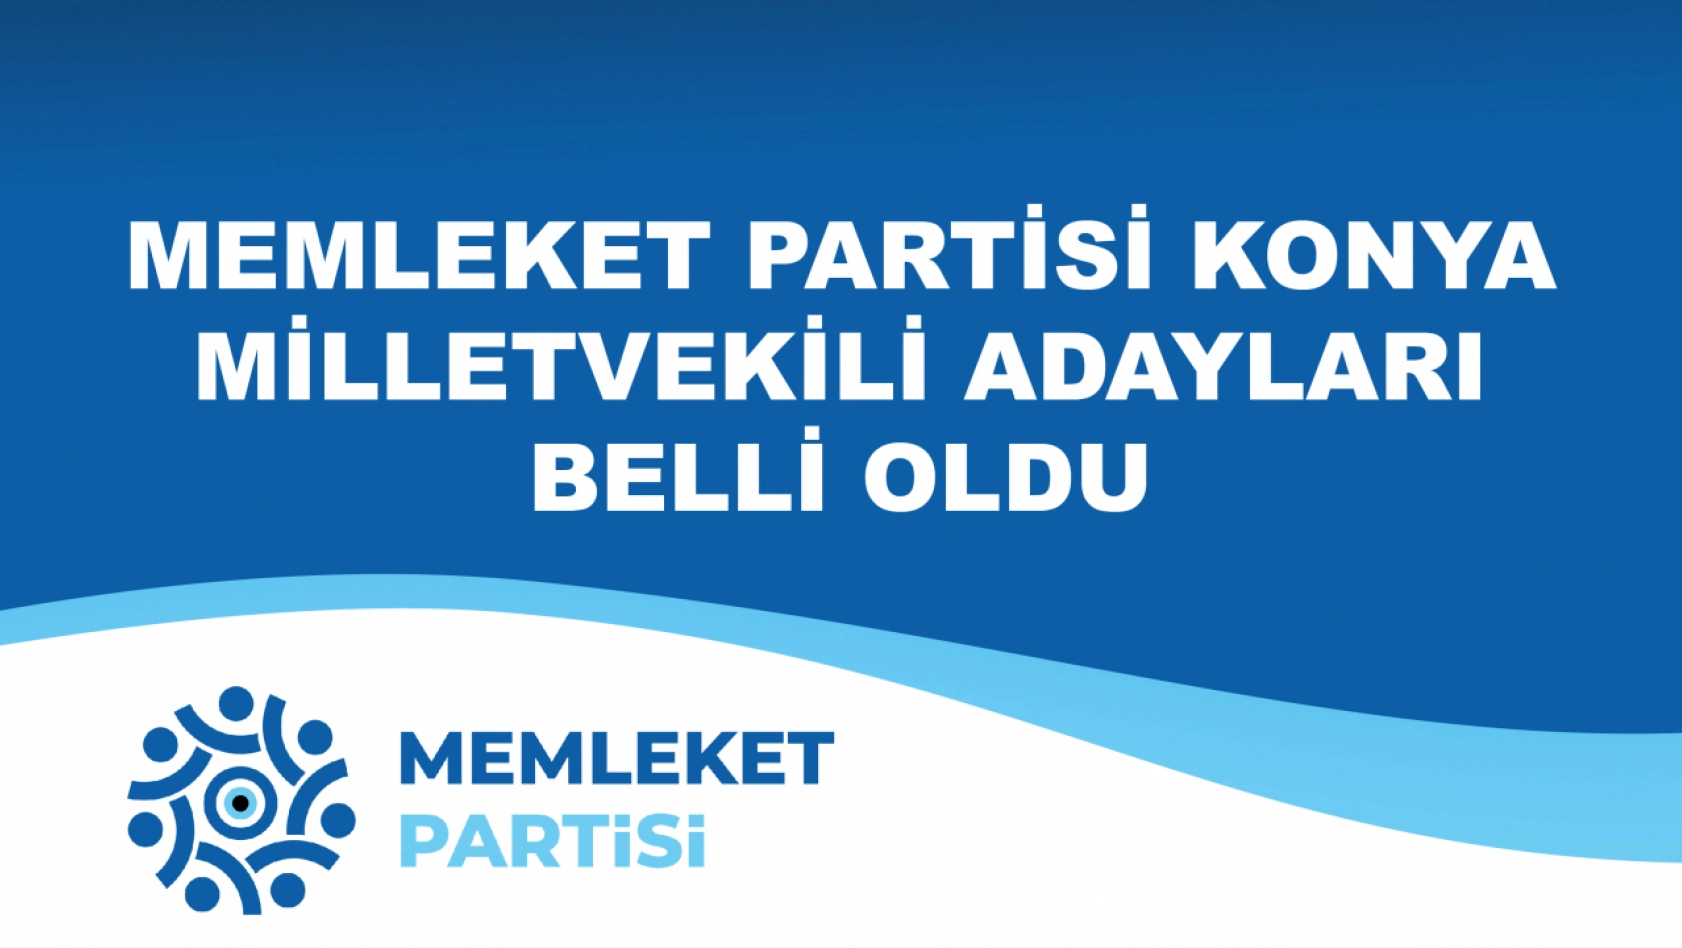 Memleket Partisi de Konya milletvekili adaylarını açıkladı.